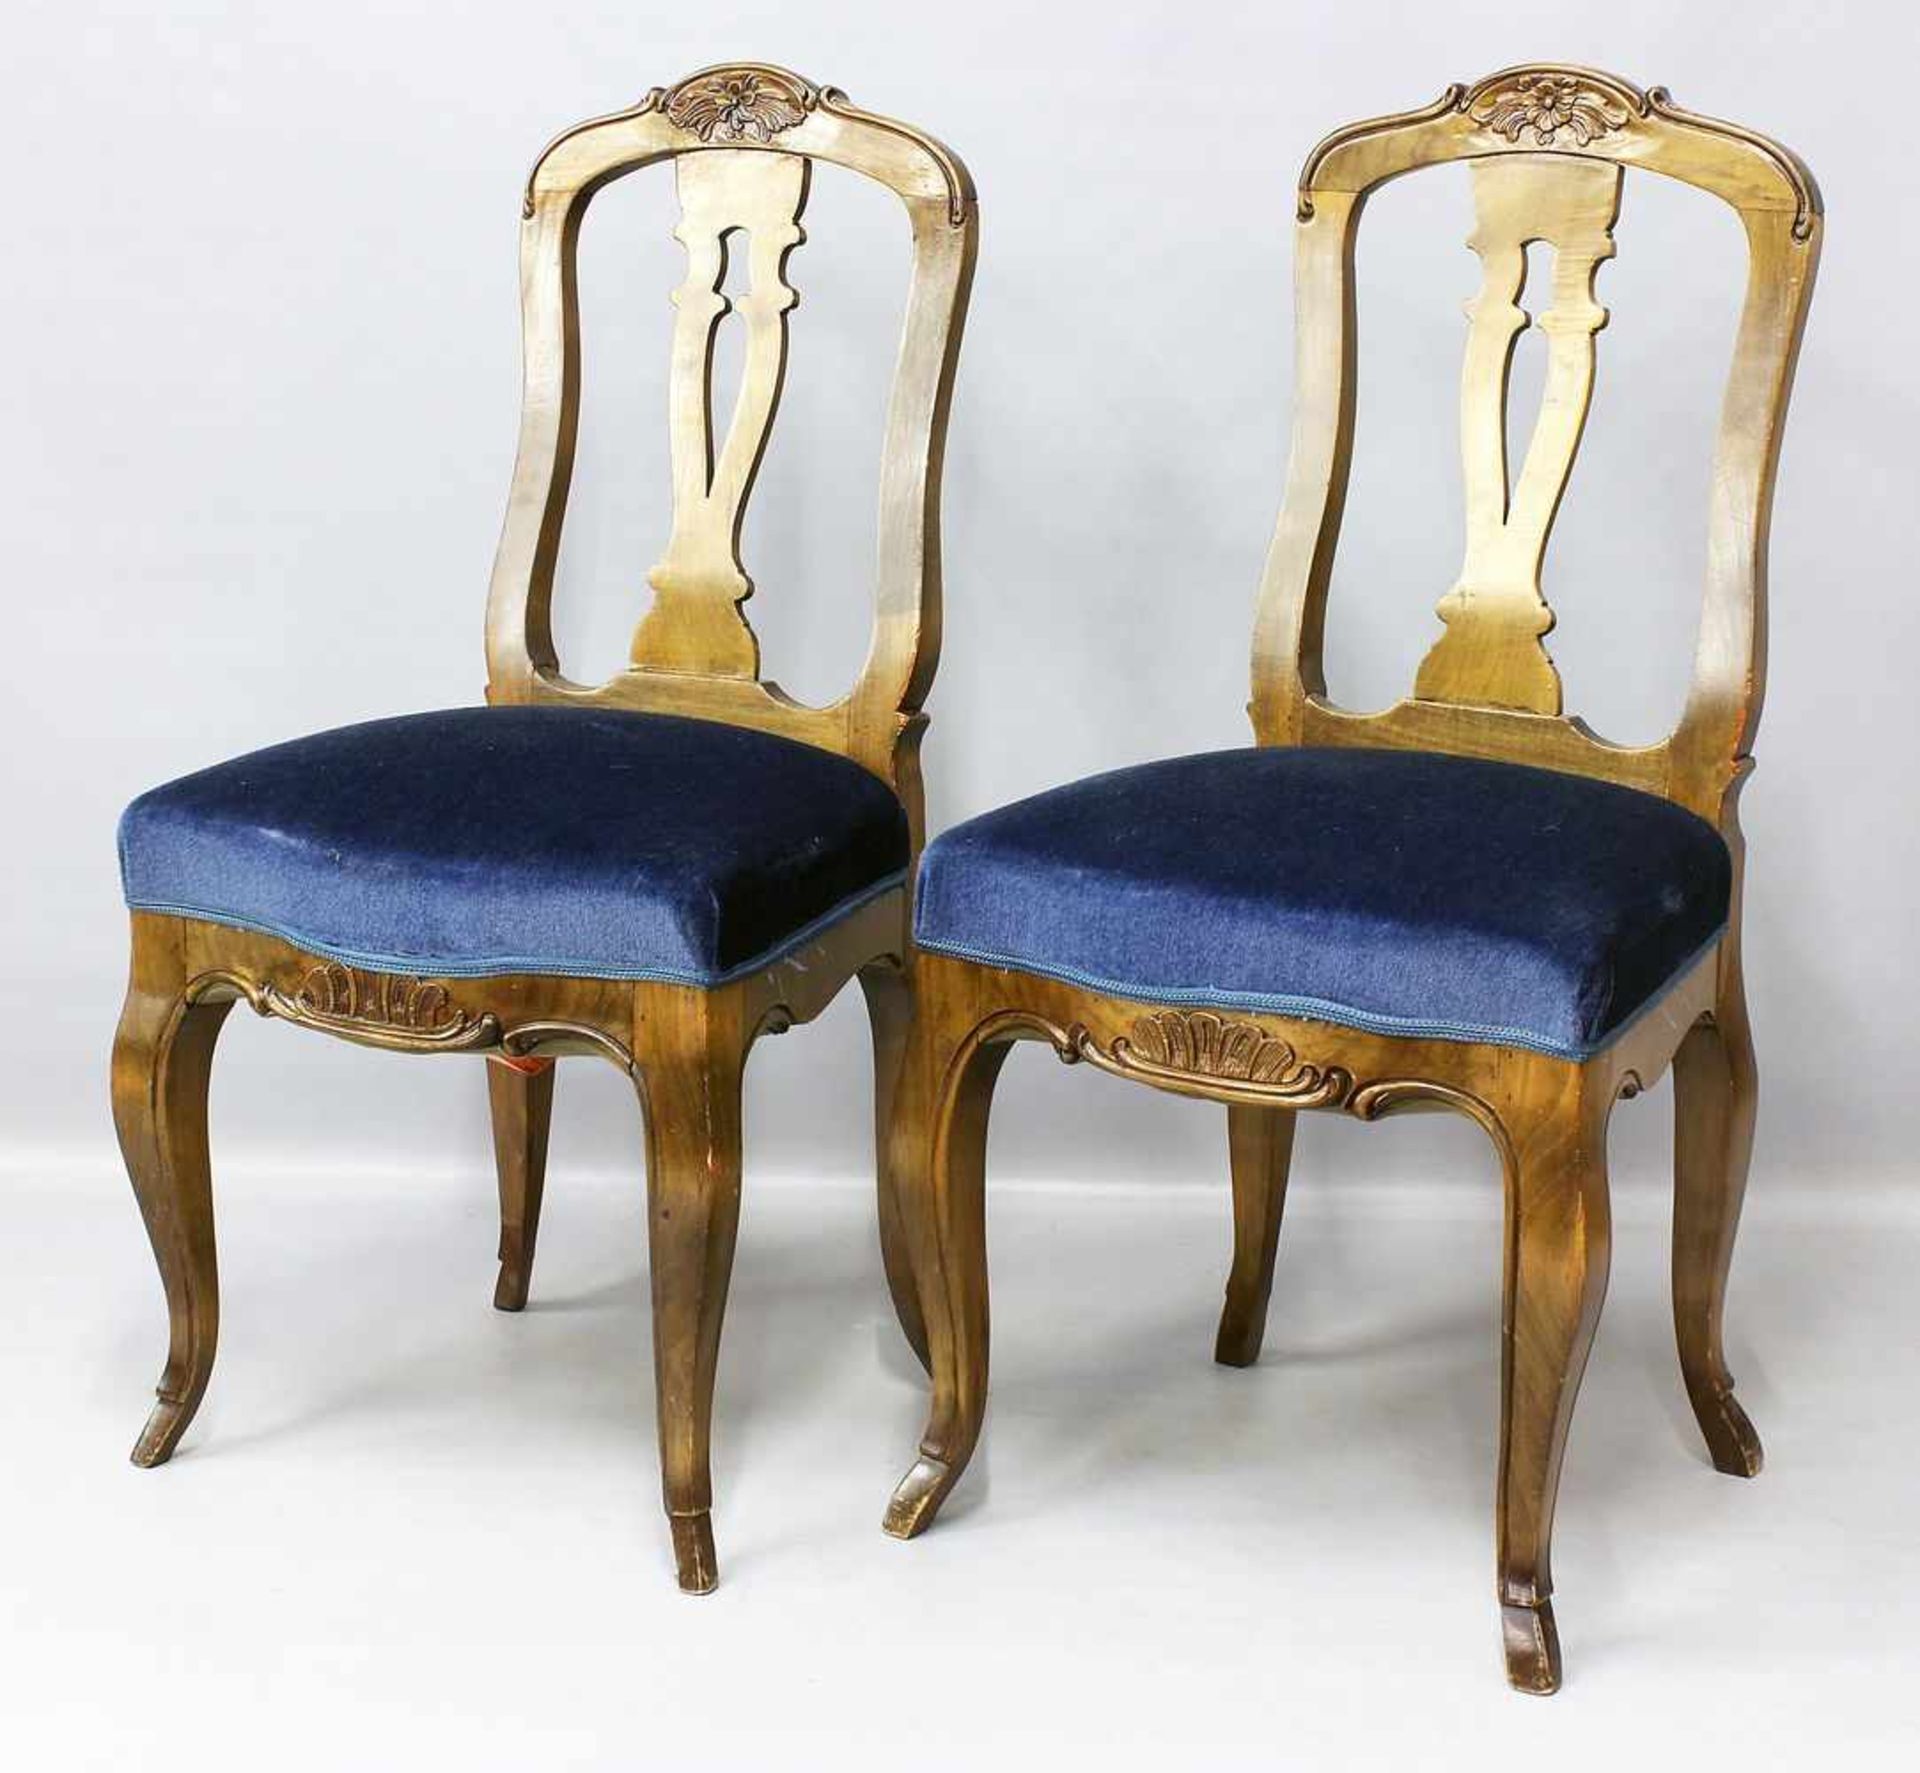 Paar Stühle im Barockstil.Nussbaum mit bleuem Samtpolster. Gebrauchsspuren. 20. Jh. H. 100 cm.